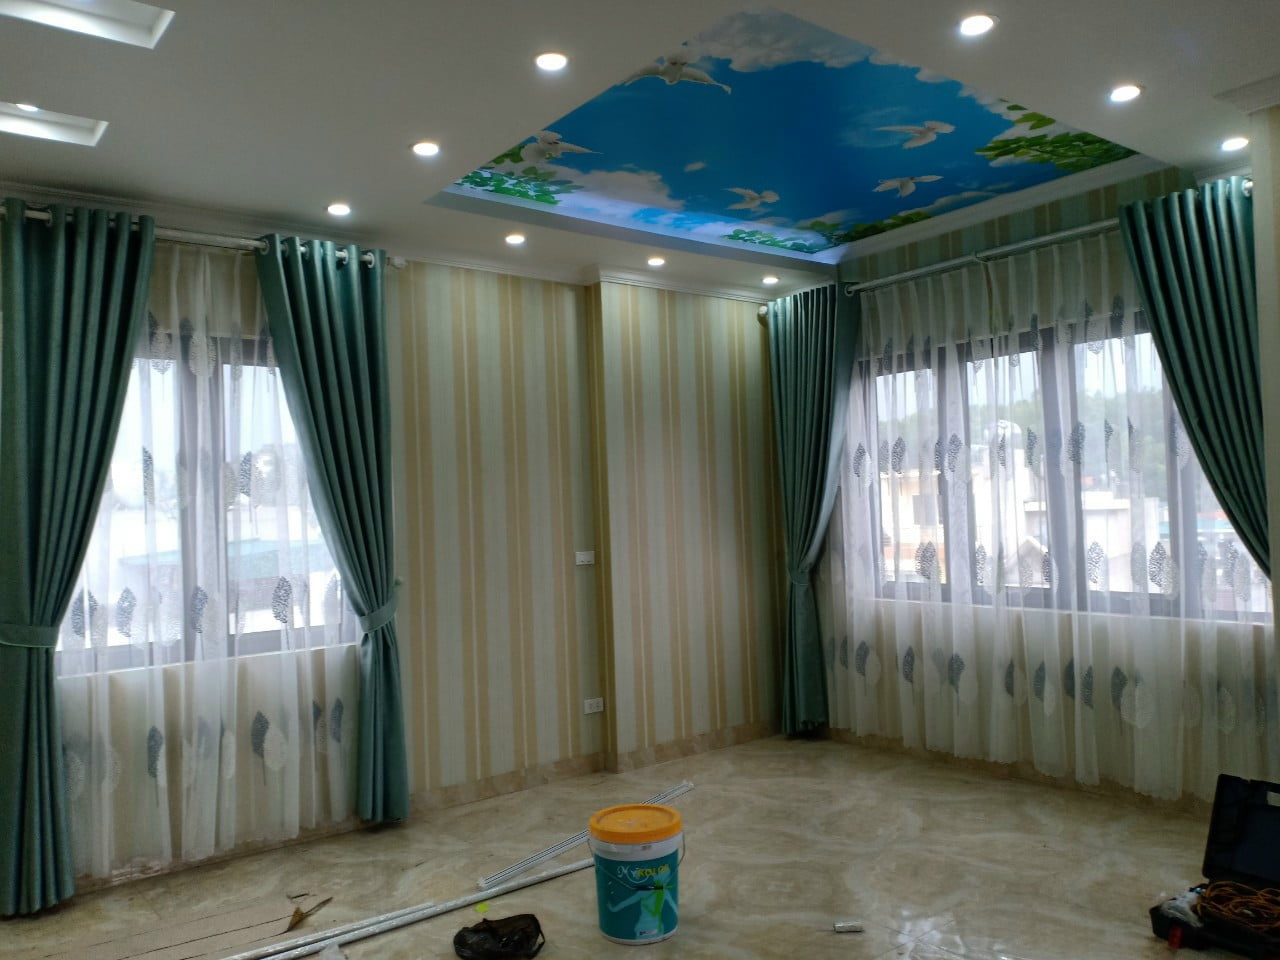 Hình ảnh thi công rèm vải 2 lớp tại nhà anh Quang - Hà Lầm - Hạ Long